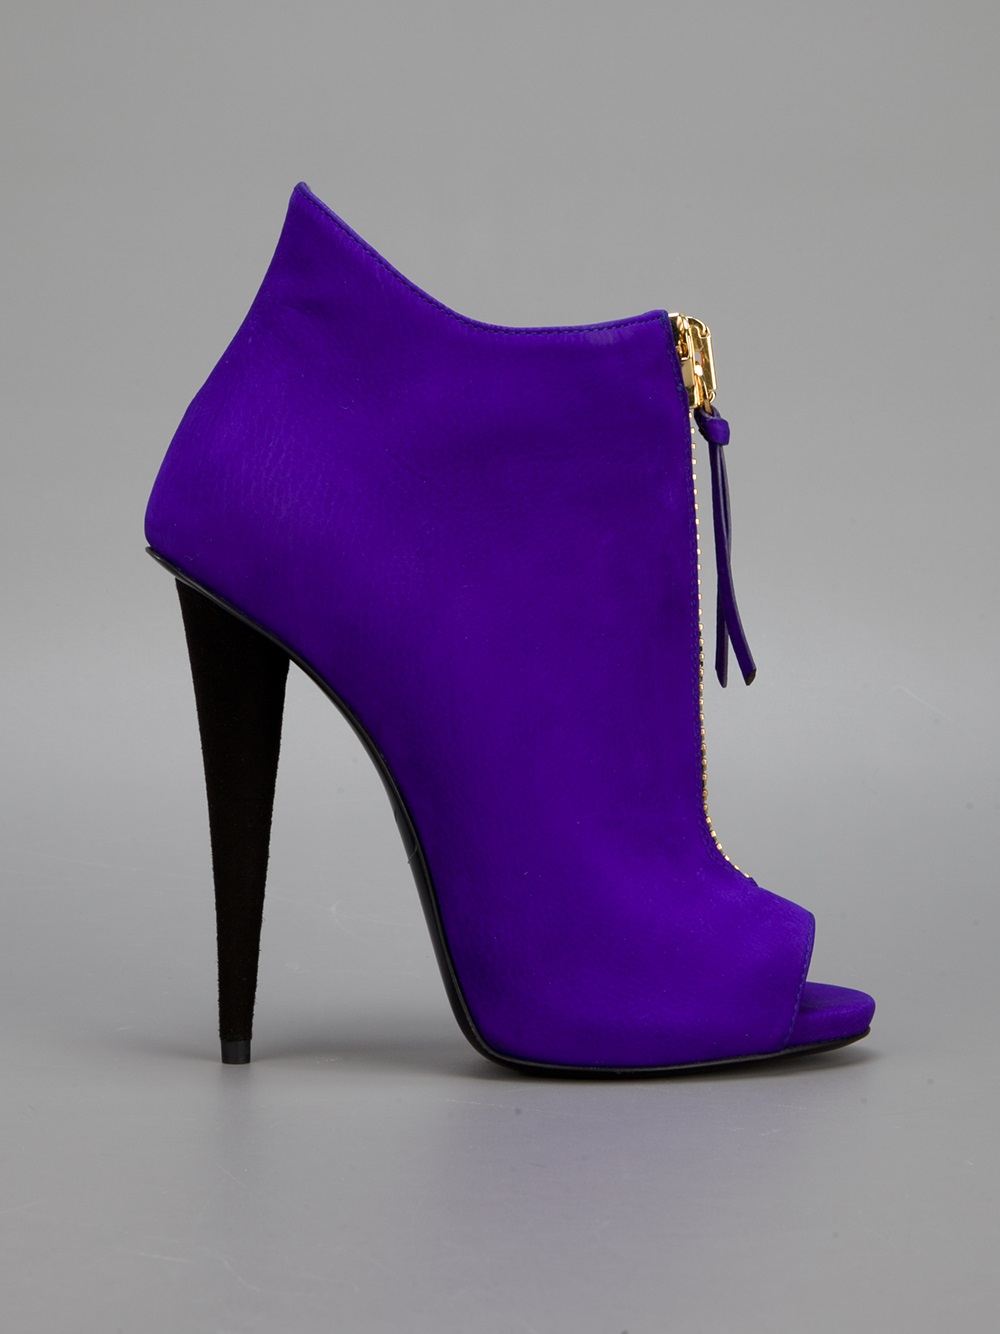 Giuseppe Zanotti Zipped Peep Toe Booties in Violet (Purple) | Lyst